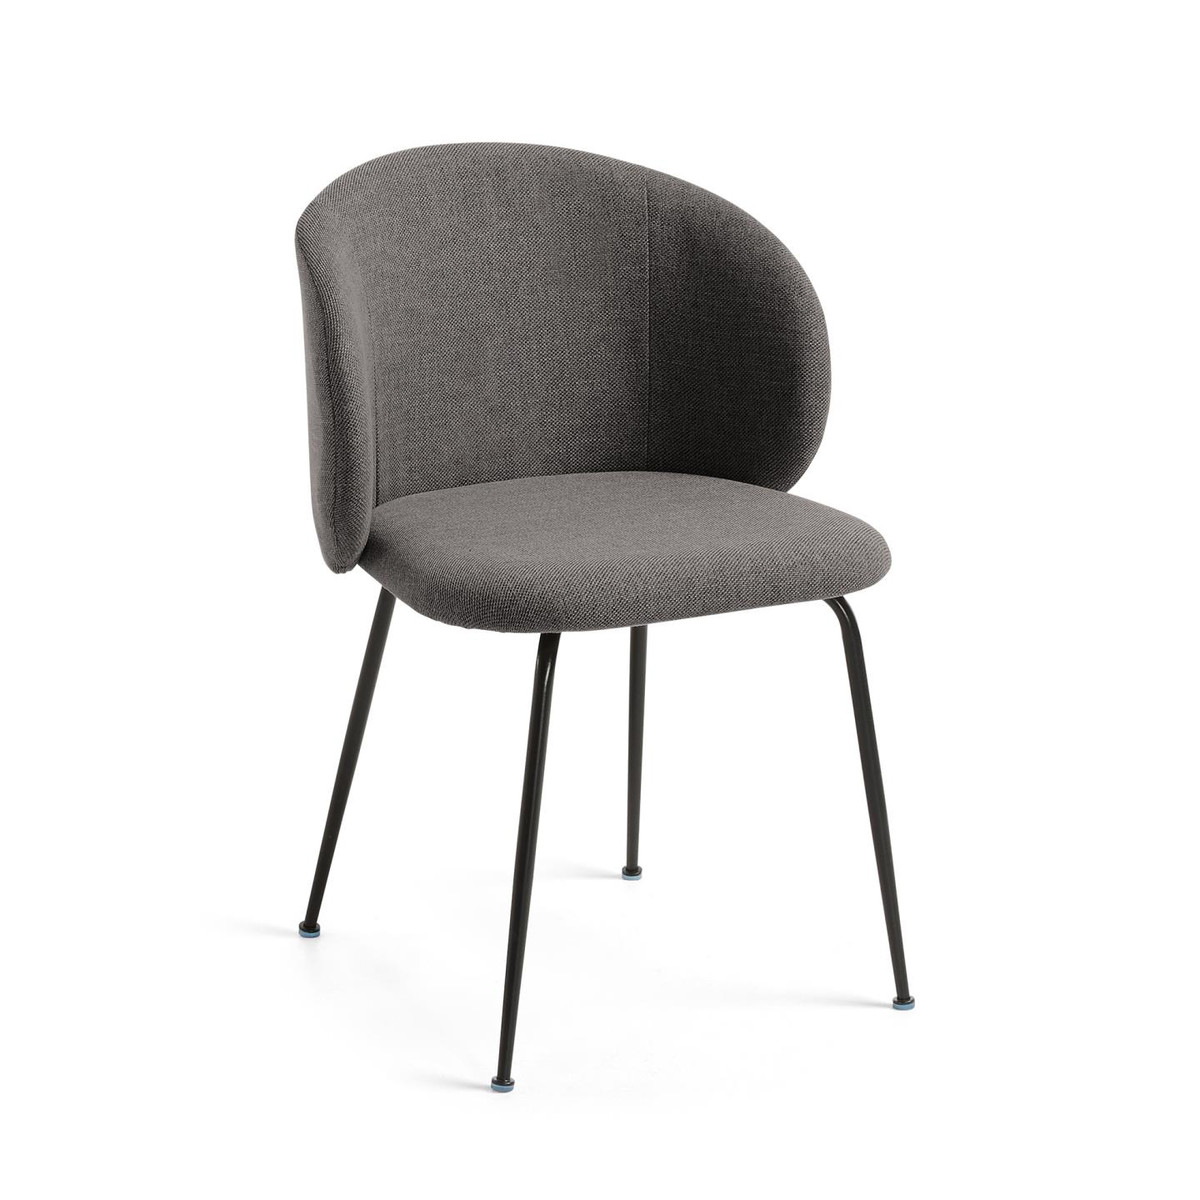 CC1167PK15 0 - Minna Dining Chair - Dark Grey